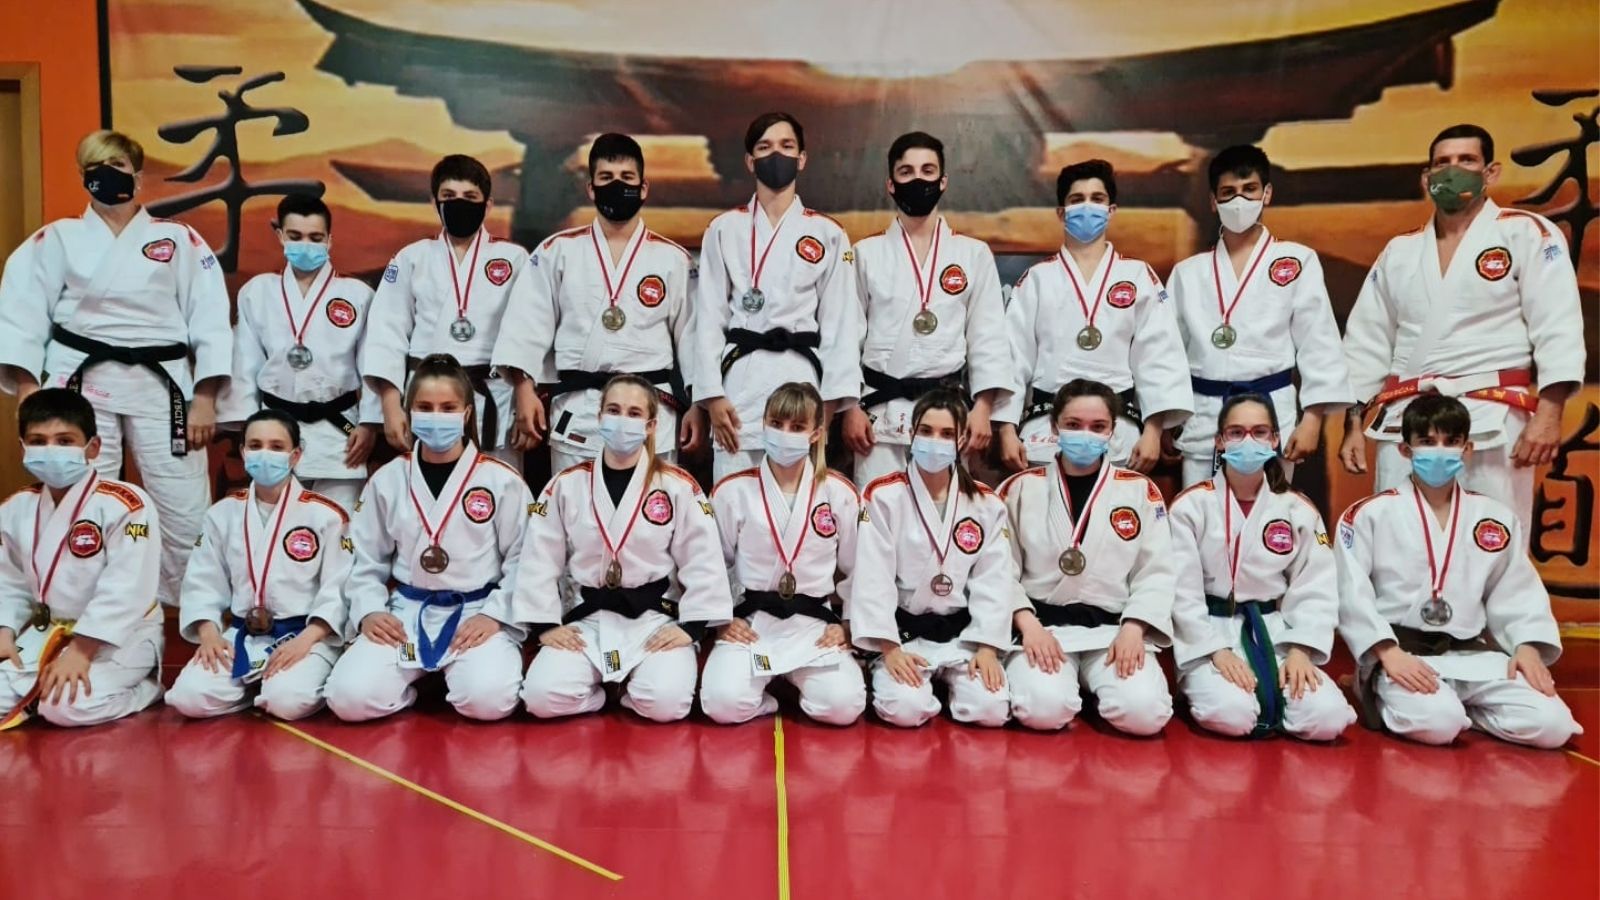 El club de Judo sigue sumando éxitos